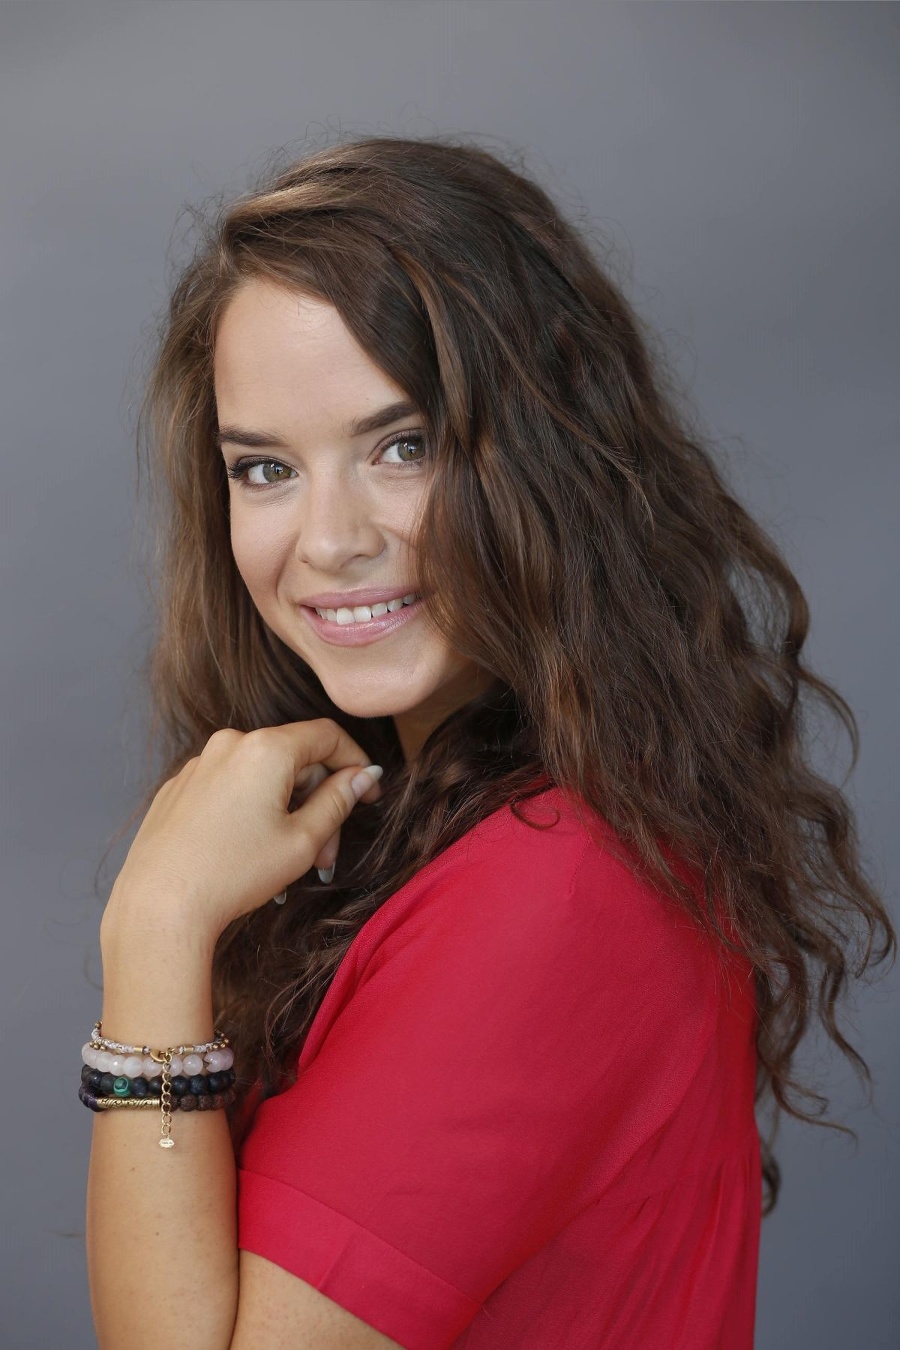 Kristína Svarinská